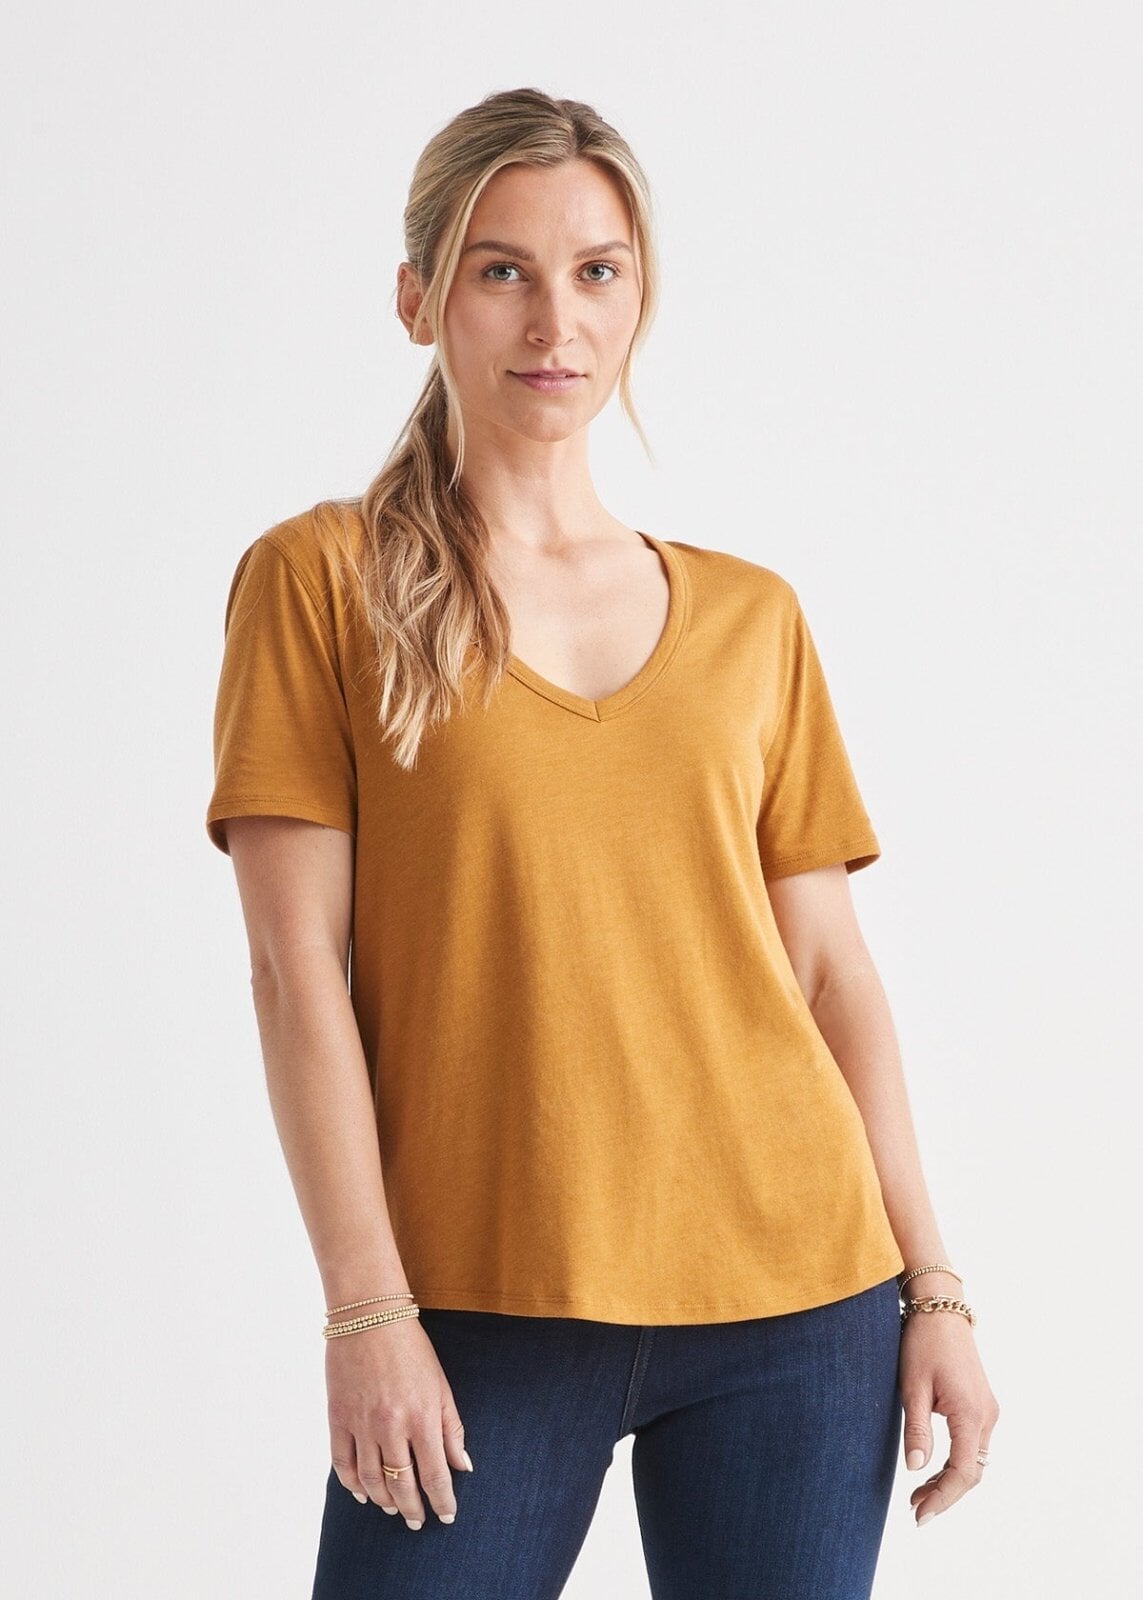 Women's Soft Lightweight Yellow V-Neck T-Shirt Front